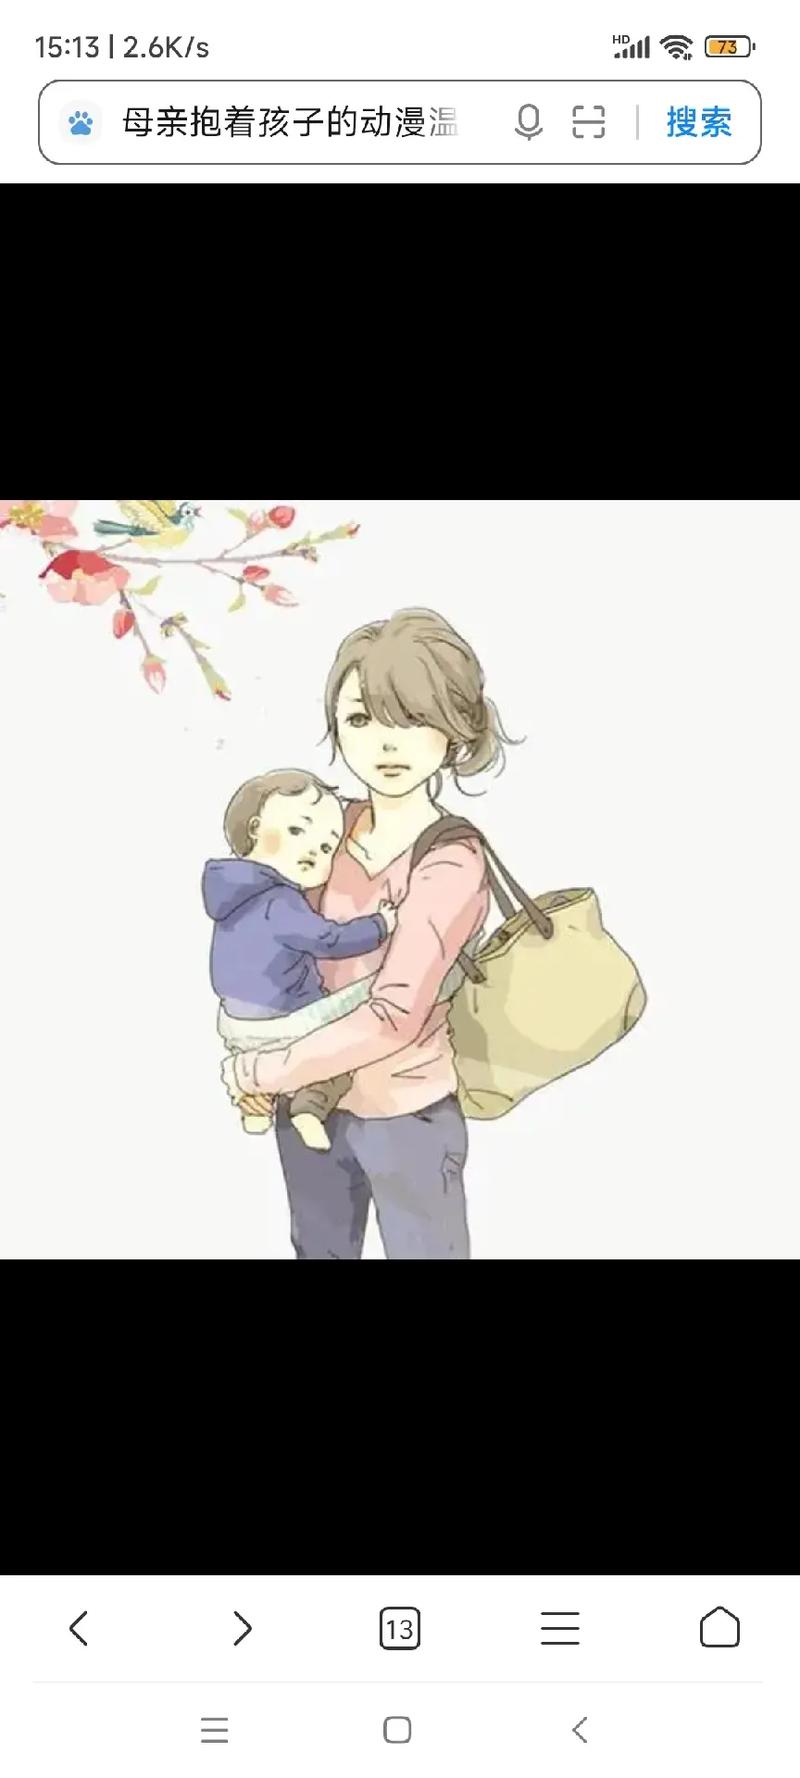 母亲抱着孩子的动漫温 love 15:13|2.6k/s 搜 - 抖音